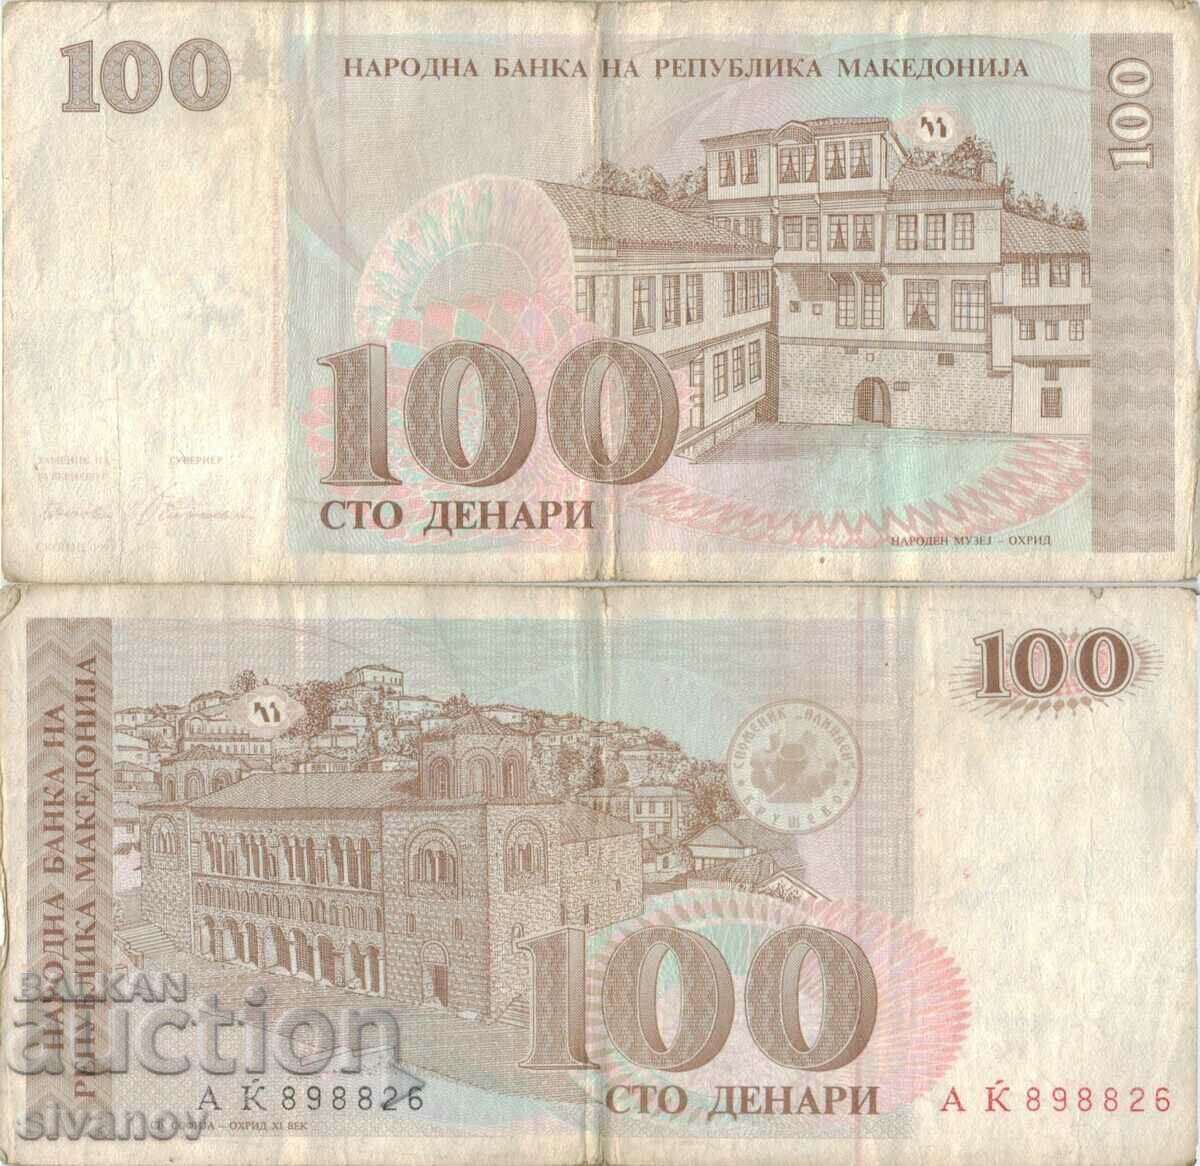 Μακεδονία 100 denar τραπεζογραμμάτιο 1993 #5223